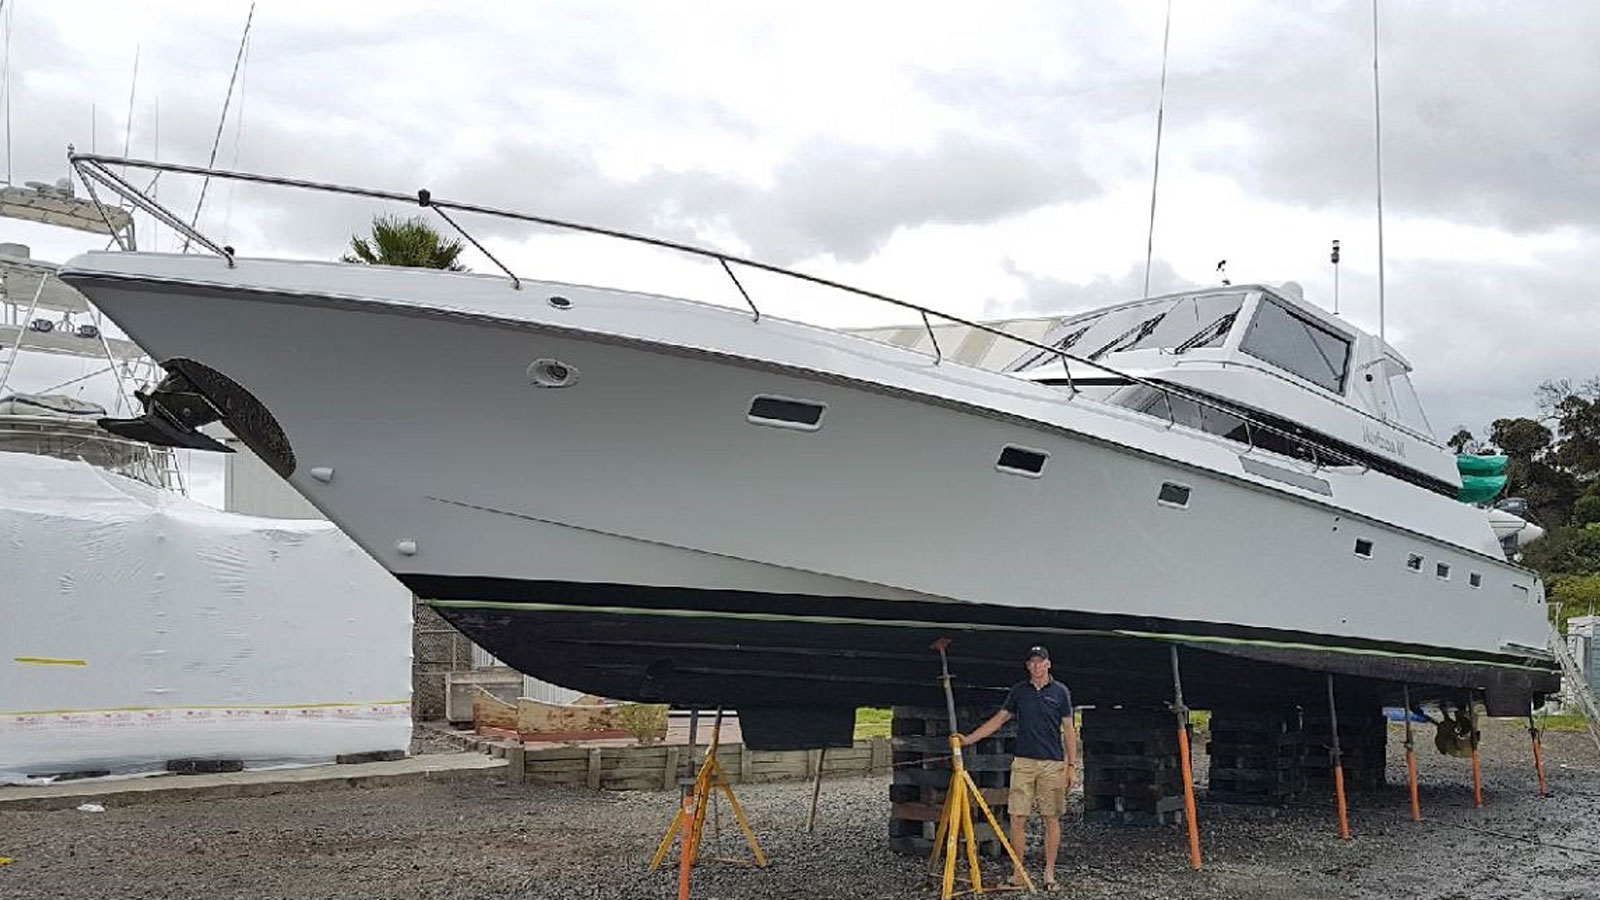 70 foot Warwick motor yacht, Horizon III, on the hard